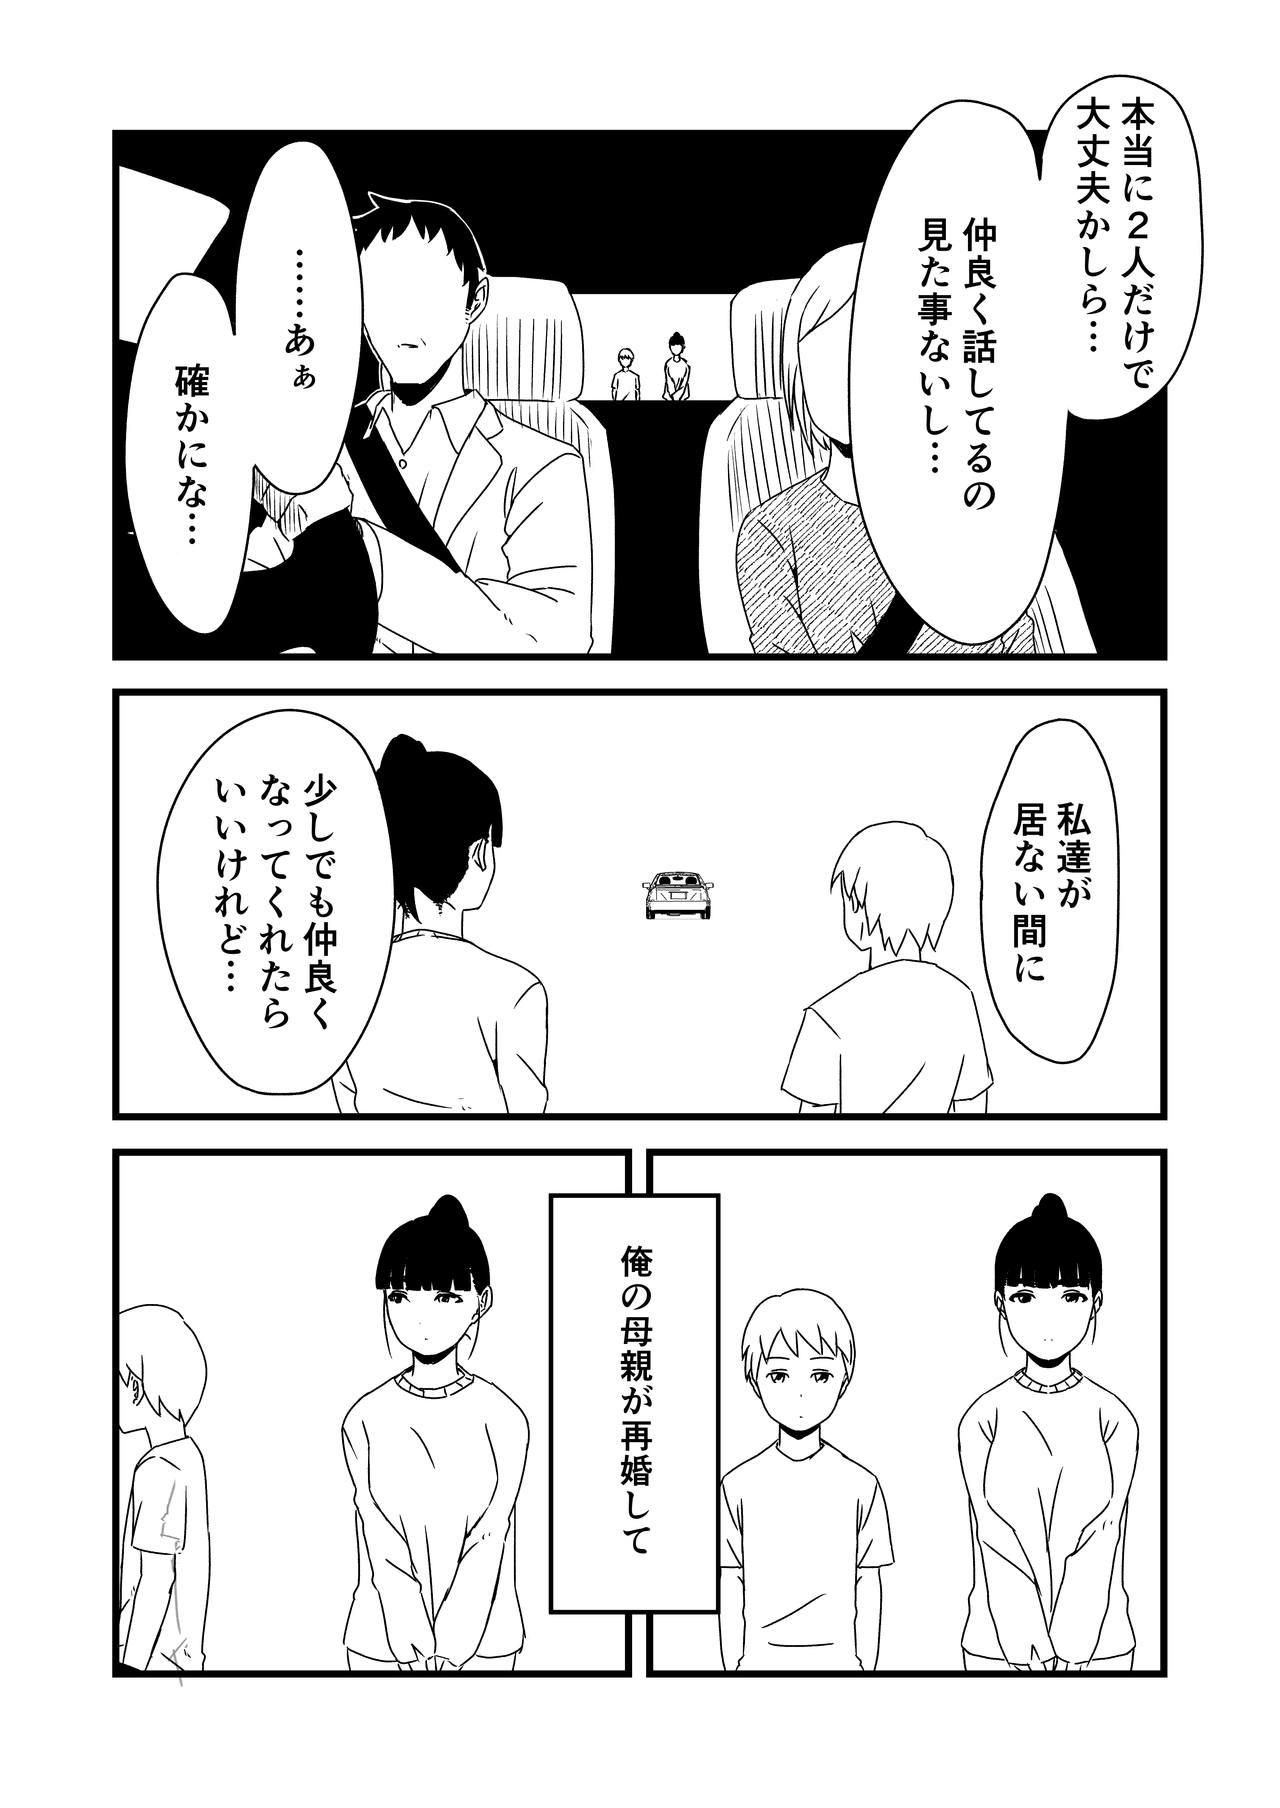 Masterbate [Senaka] Giri no Ane to no 7-kakan Seikatsu - 1 - Original Skinny - Page 6